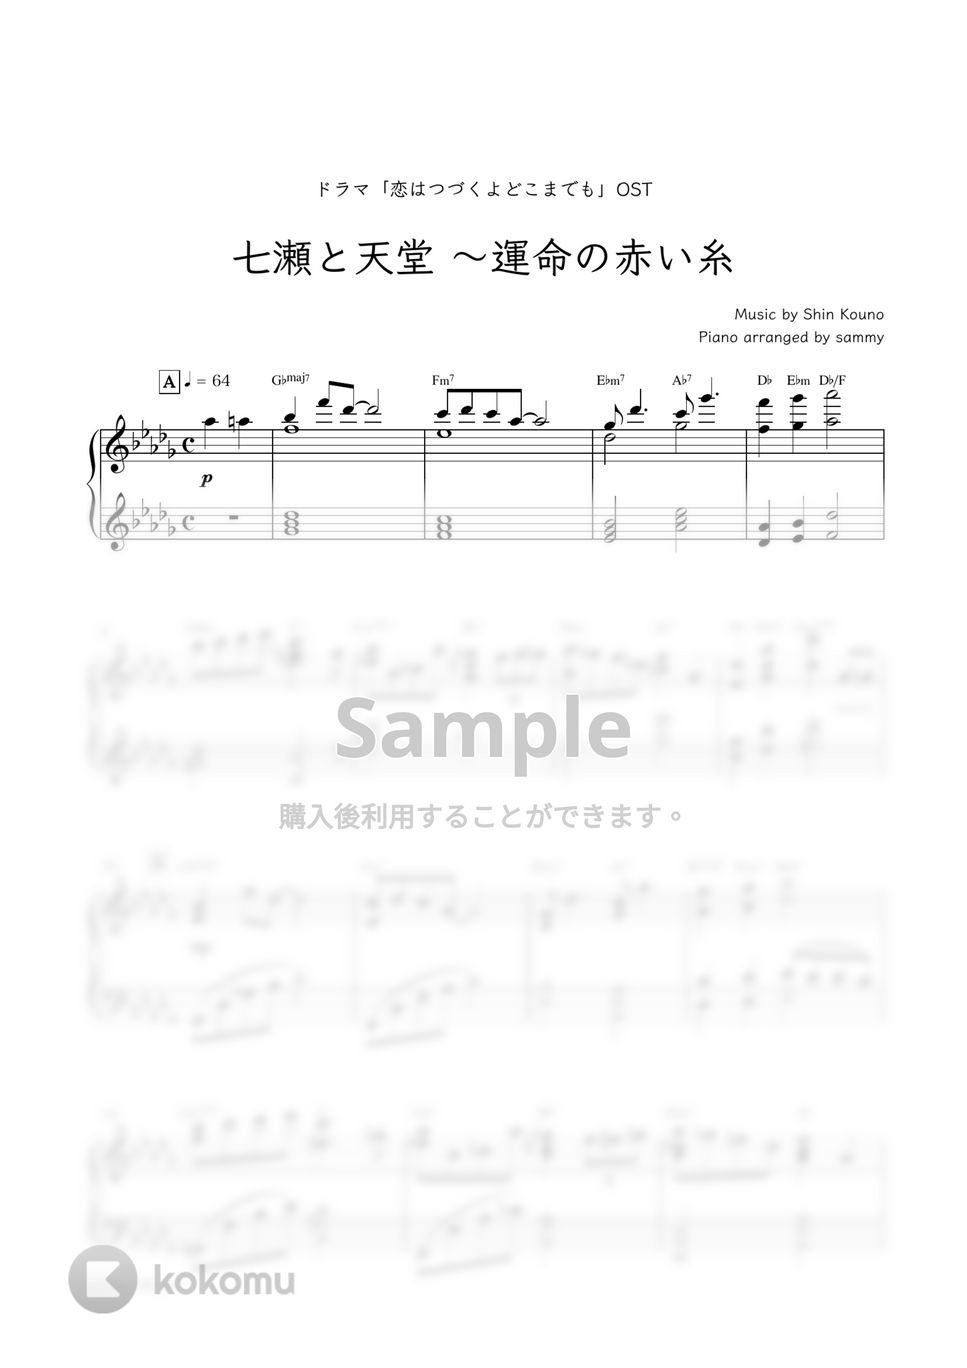 ドラマ『恋はつづくよどこまでも』OST - 七瀬と天堂 〜運命の赤い糸 by sammy